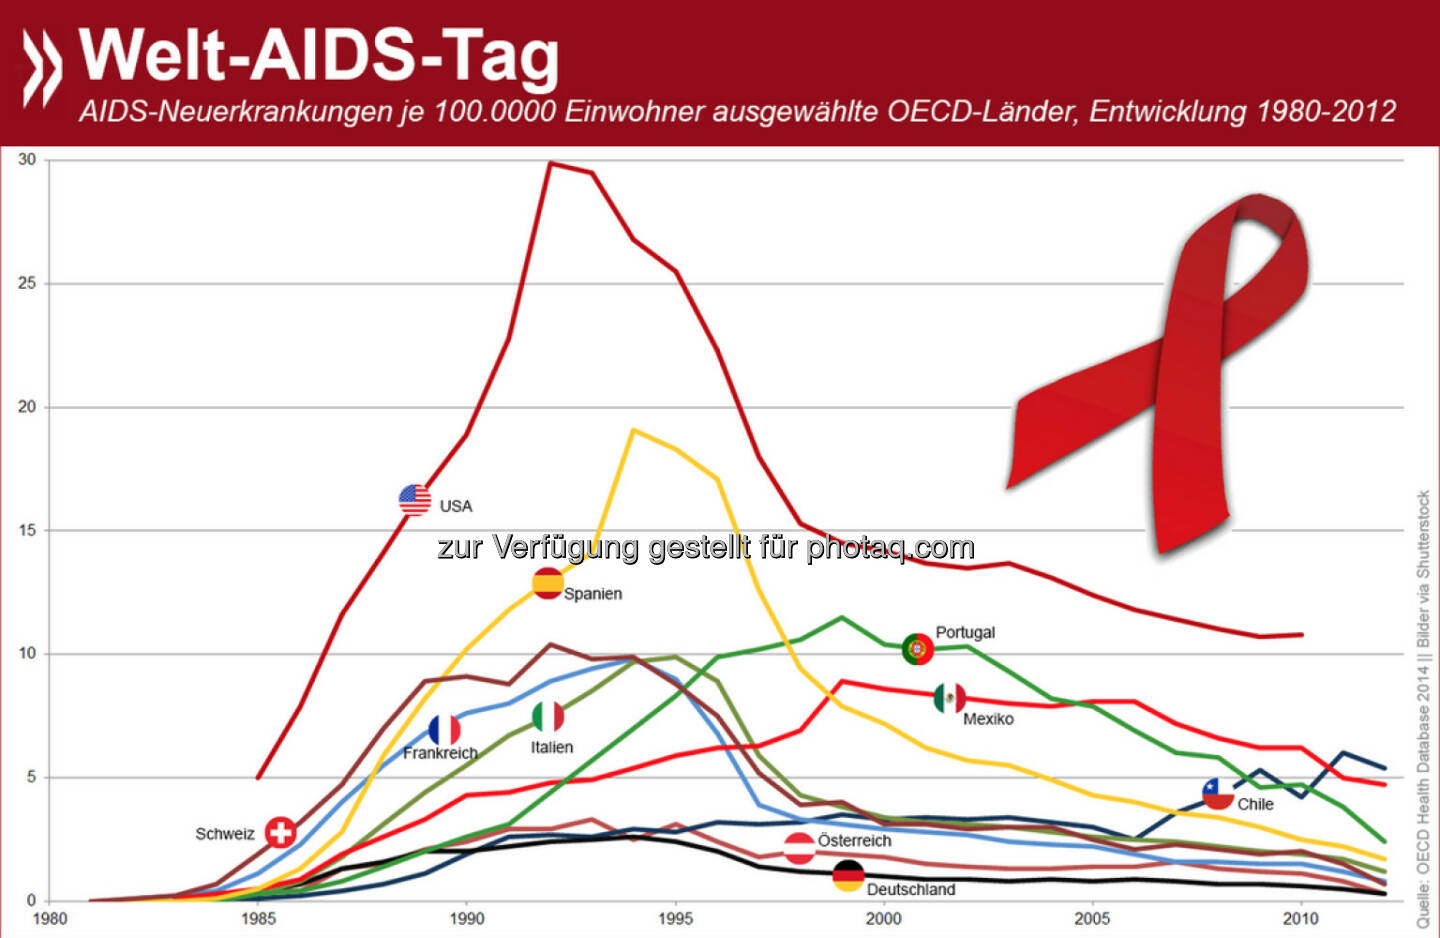 Welt-Aids-Tag: Die Zahl der Aids-Neuerkrankungen geht weltweit zurück. In Deutschland, Österreich und der Schweiz wurde 2012 jeweils weniger als ein Fall pro 100.000 Einwohner diagnostiziert. Trotz enormer Verbesserungen haben die USA im OECD-Raum die höchste AIDS-Häufigkeit pro Kopf.

Weitere Zahlen gibt es unter der Health-Rubrik von: http://bit.ly/1uYFqQd